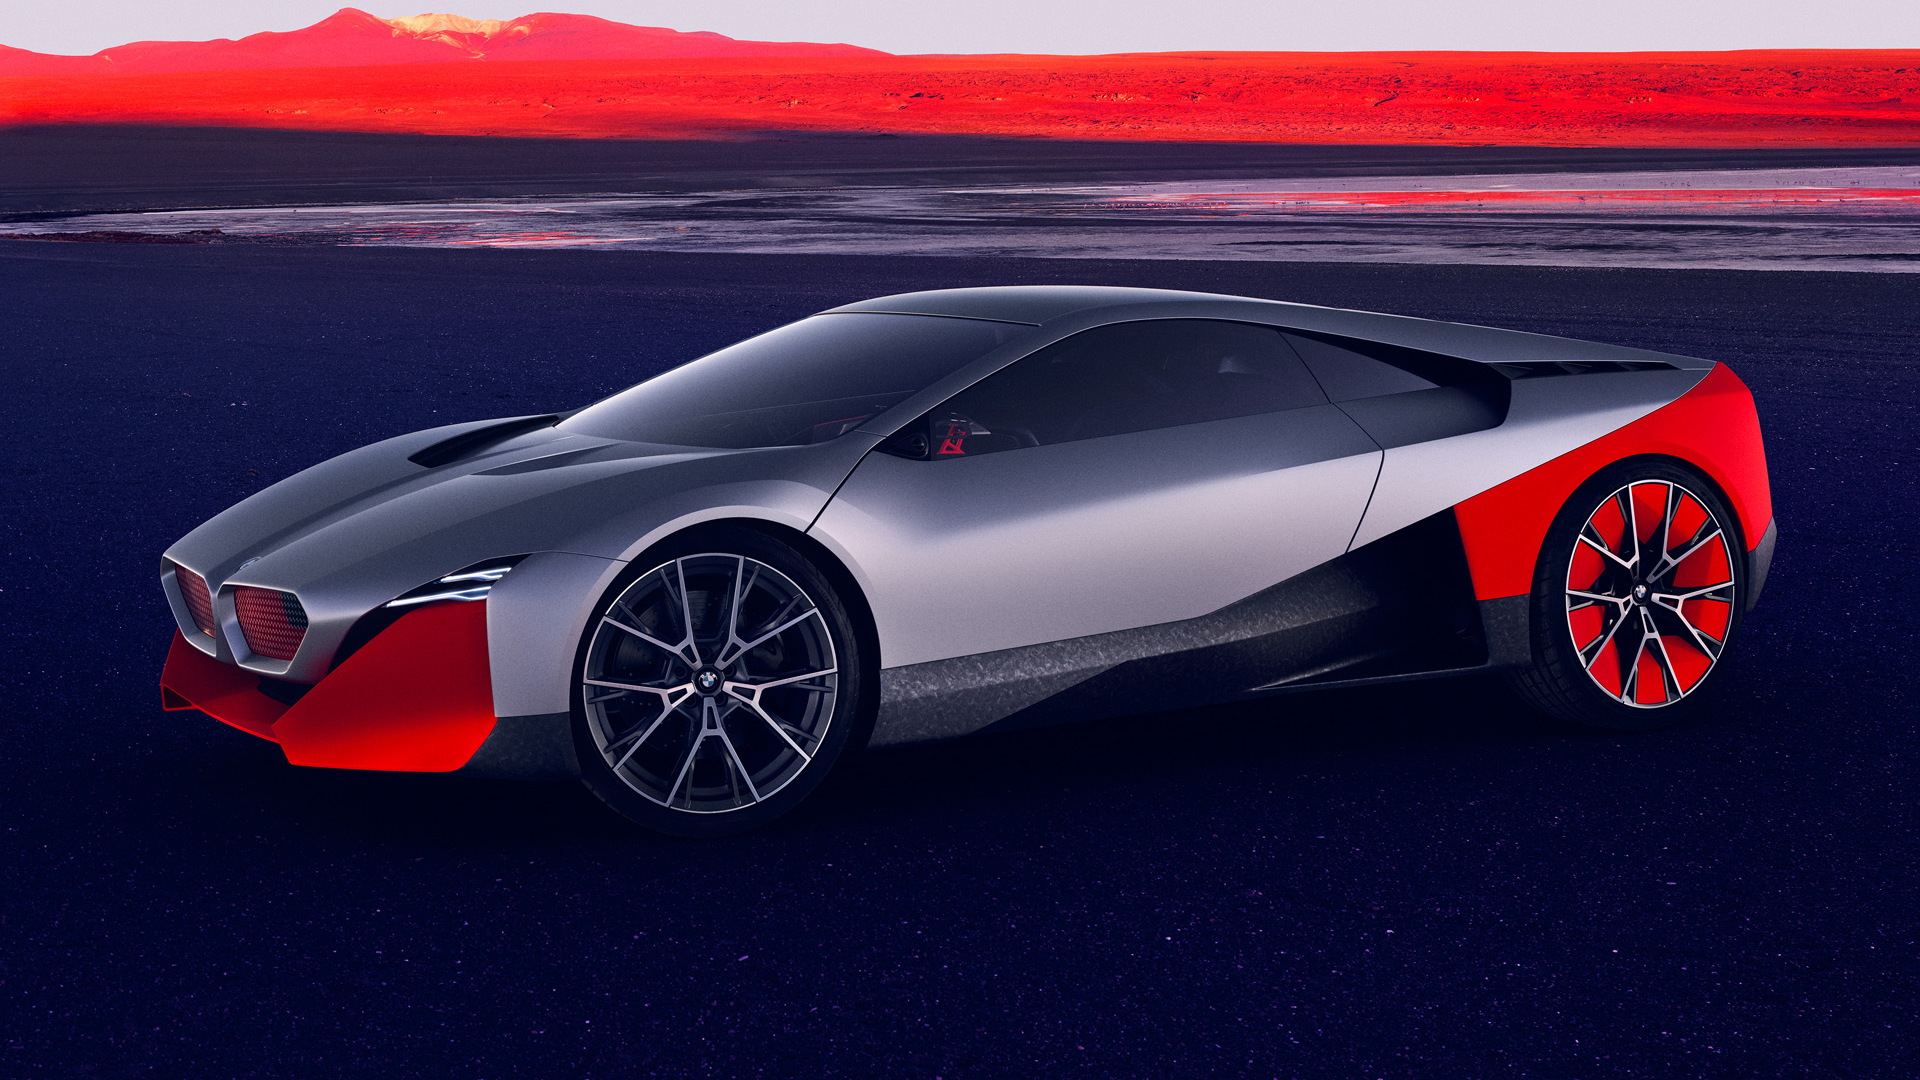 BMW Vision M Next concept